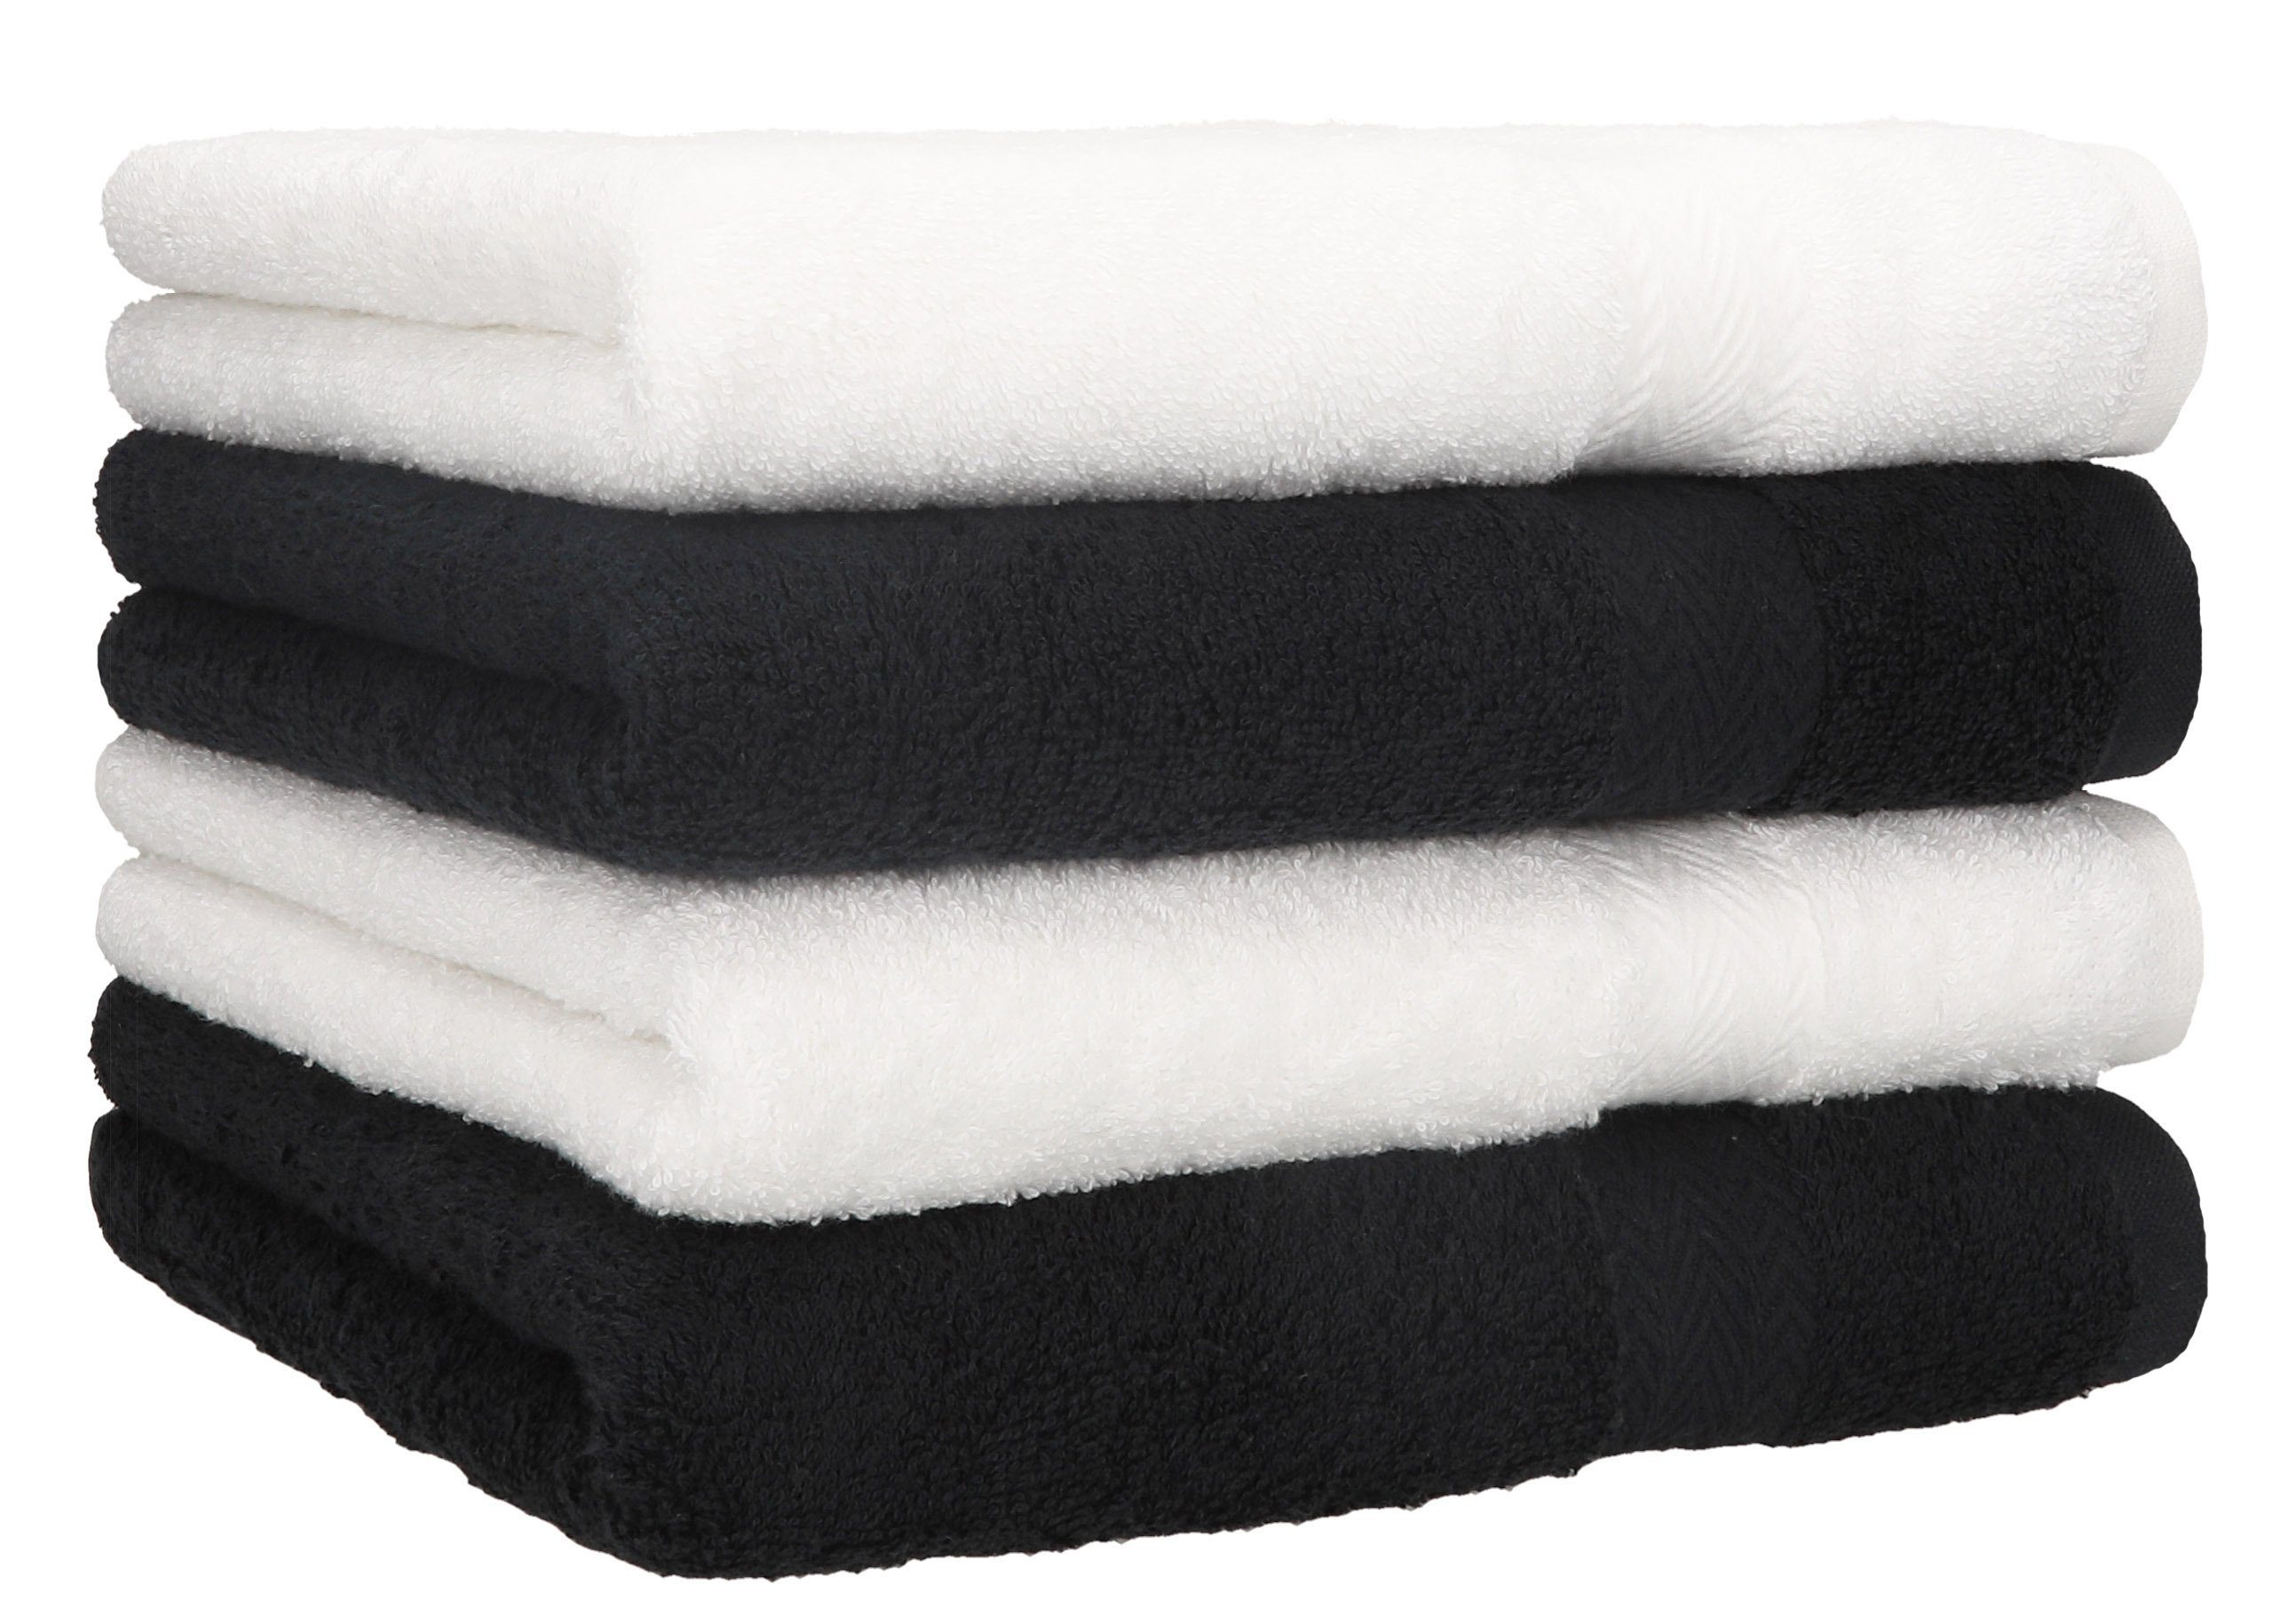 Betz Handtücher 4 Stück Handtücher Premium 4 Handtücher Farbe weiß und schwarz, 100% Baumwolle